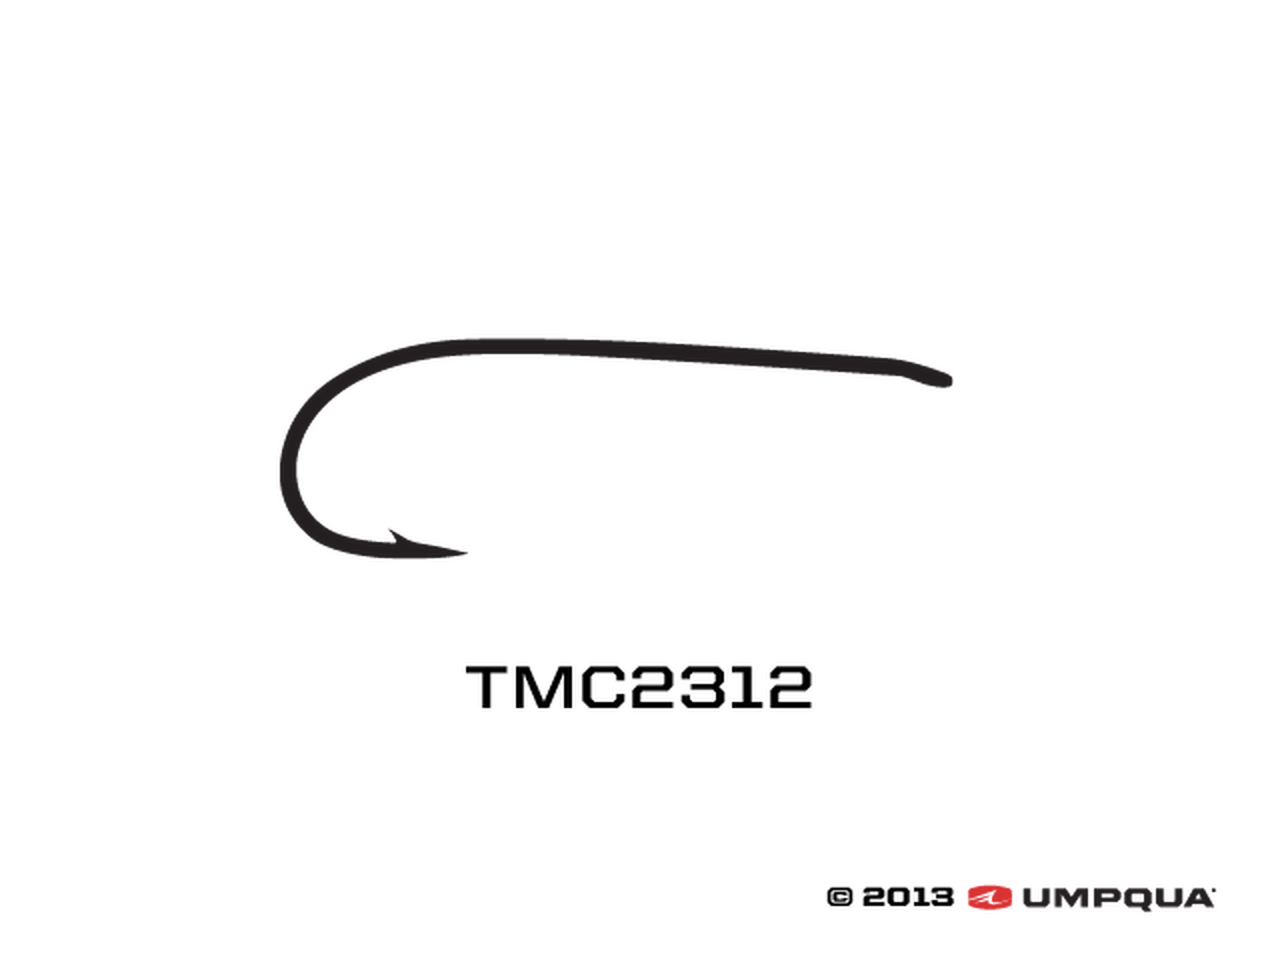 Tiemco TMC 2312 (100 PACK)